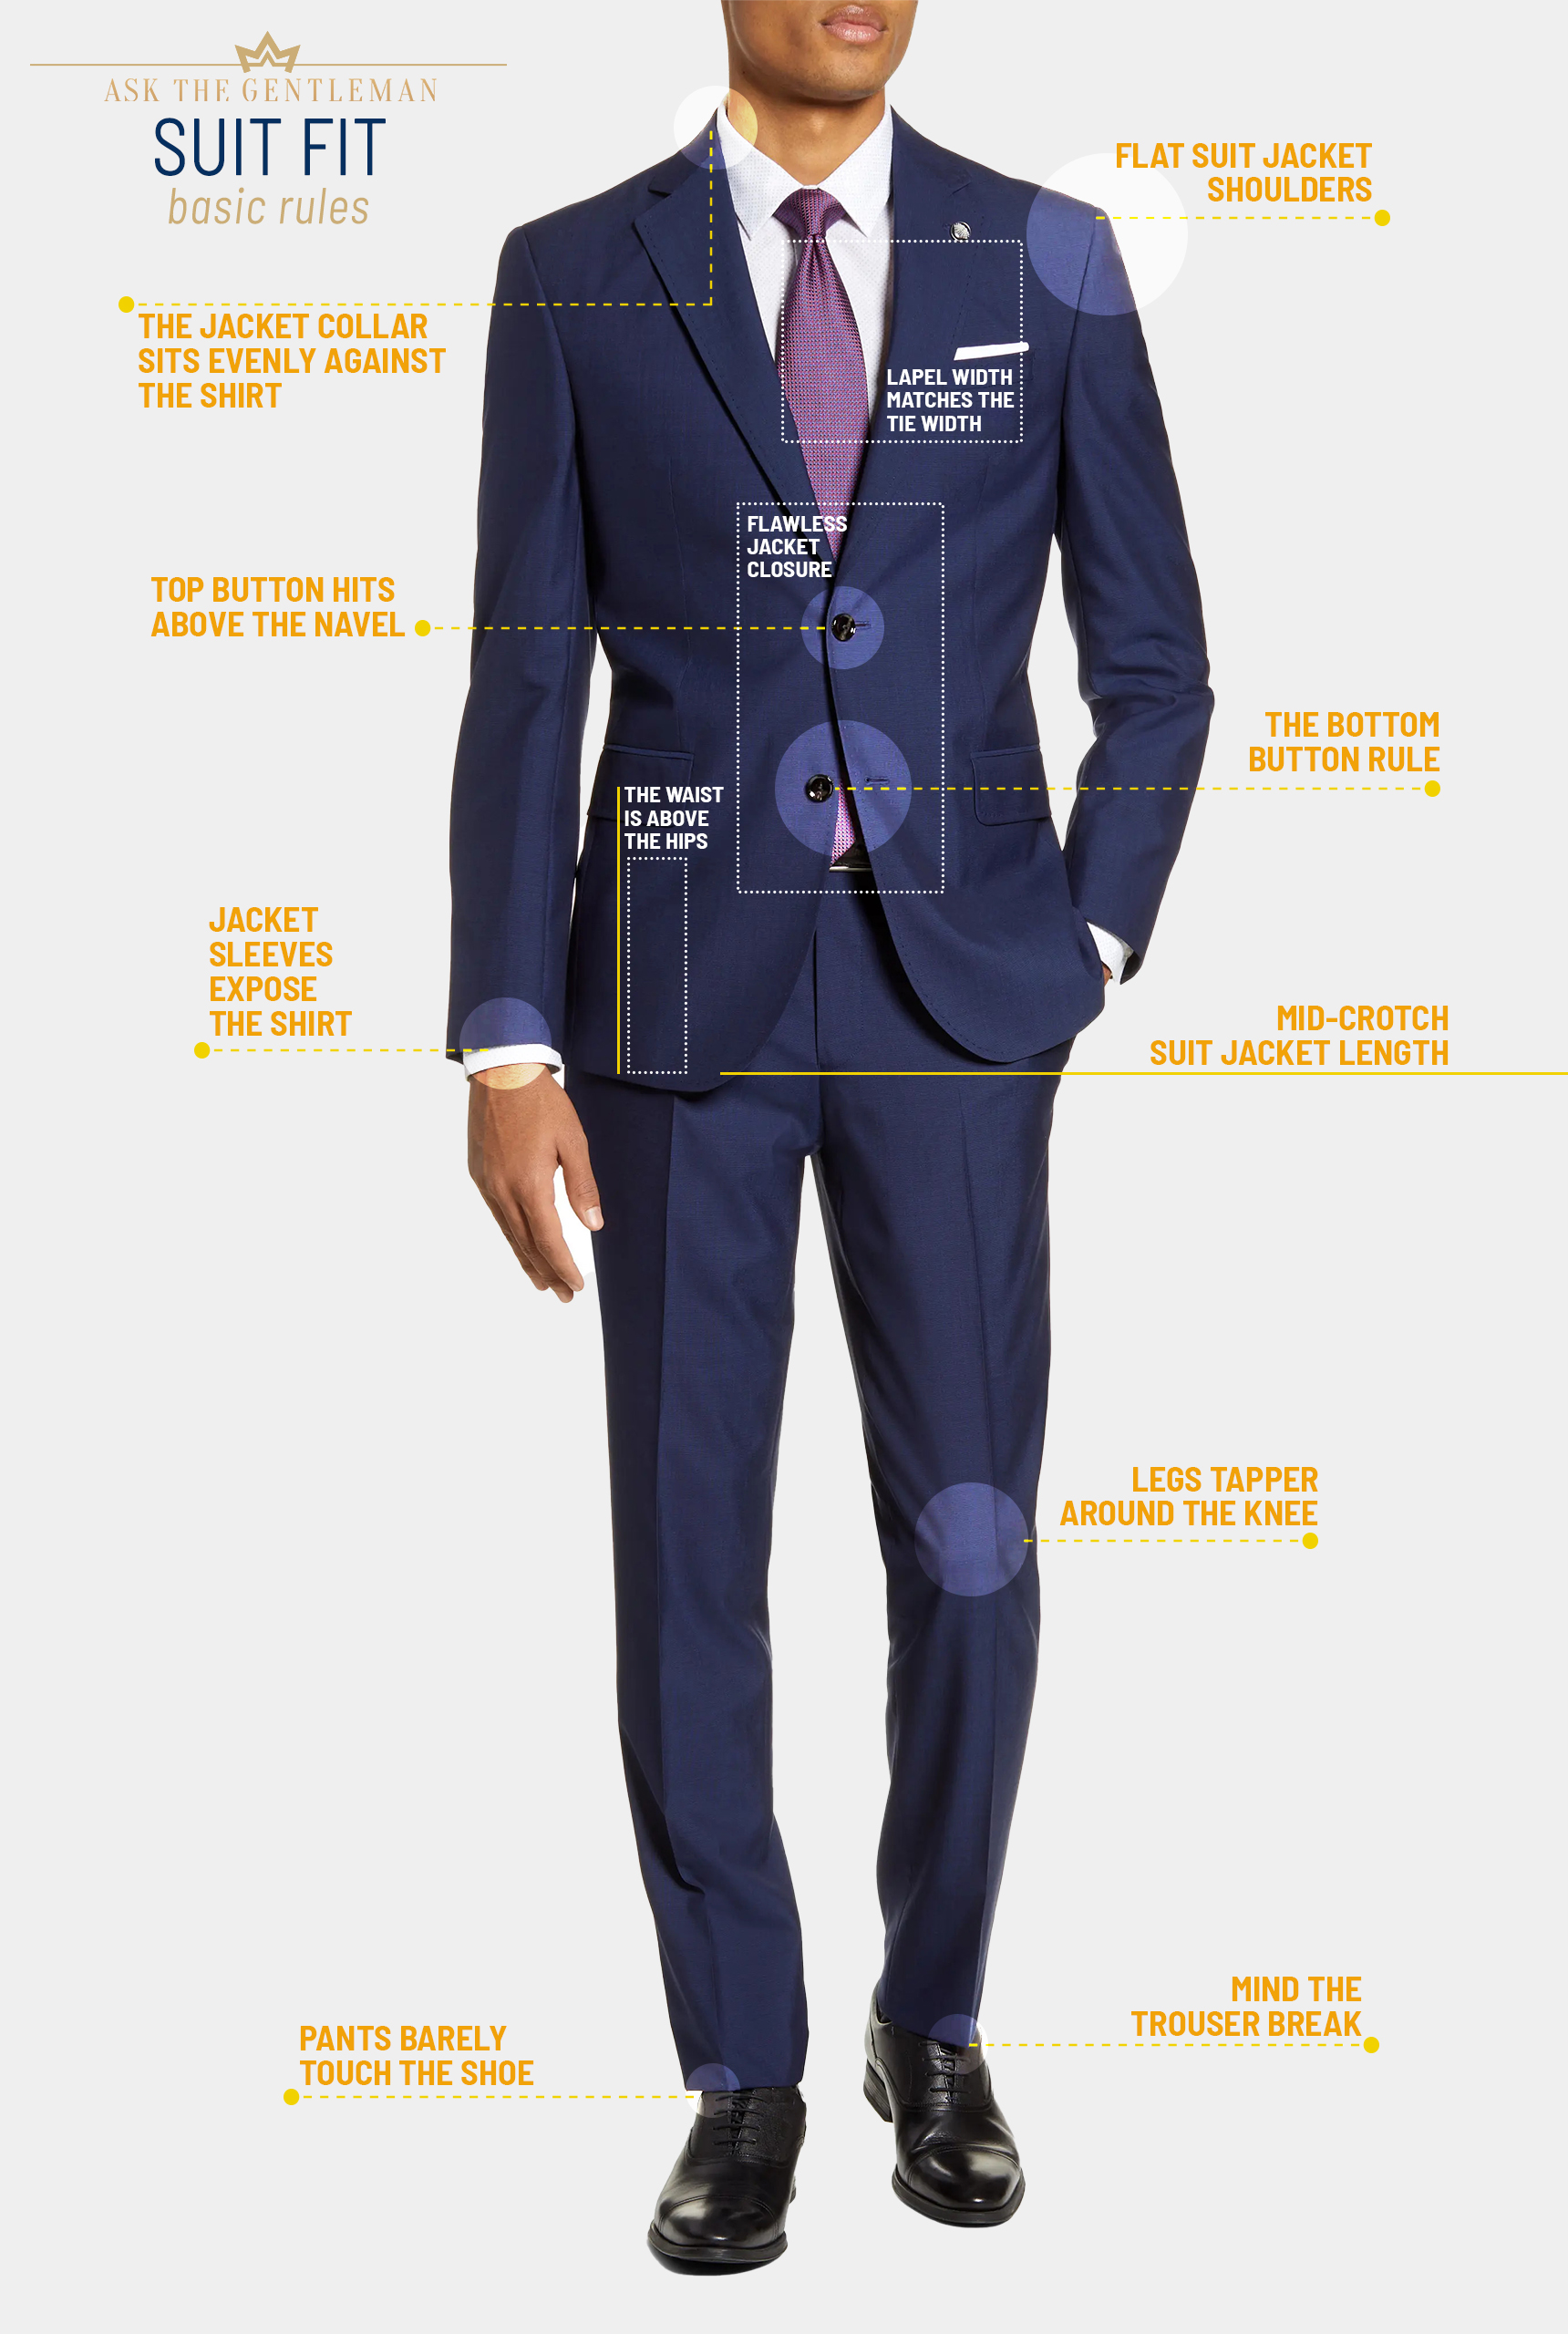 How should a suit fit